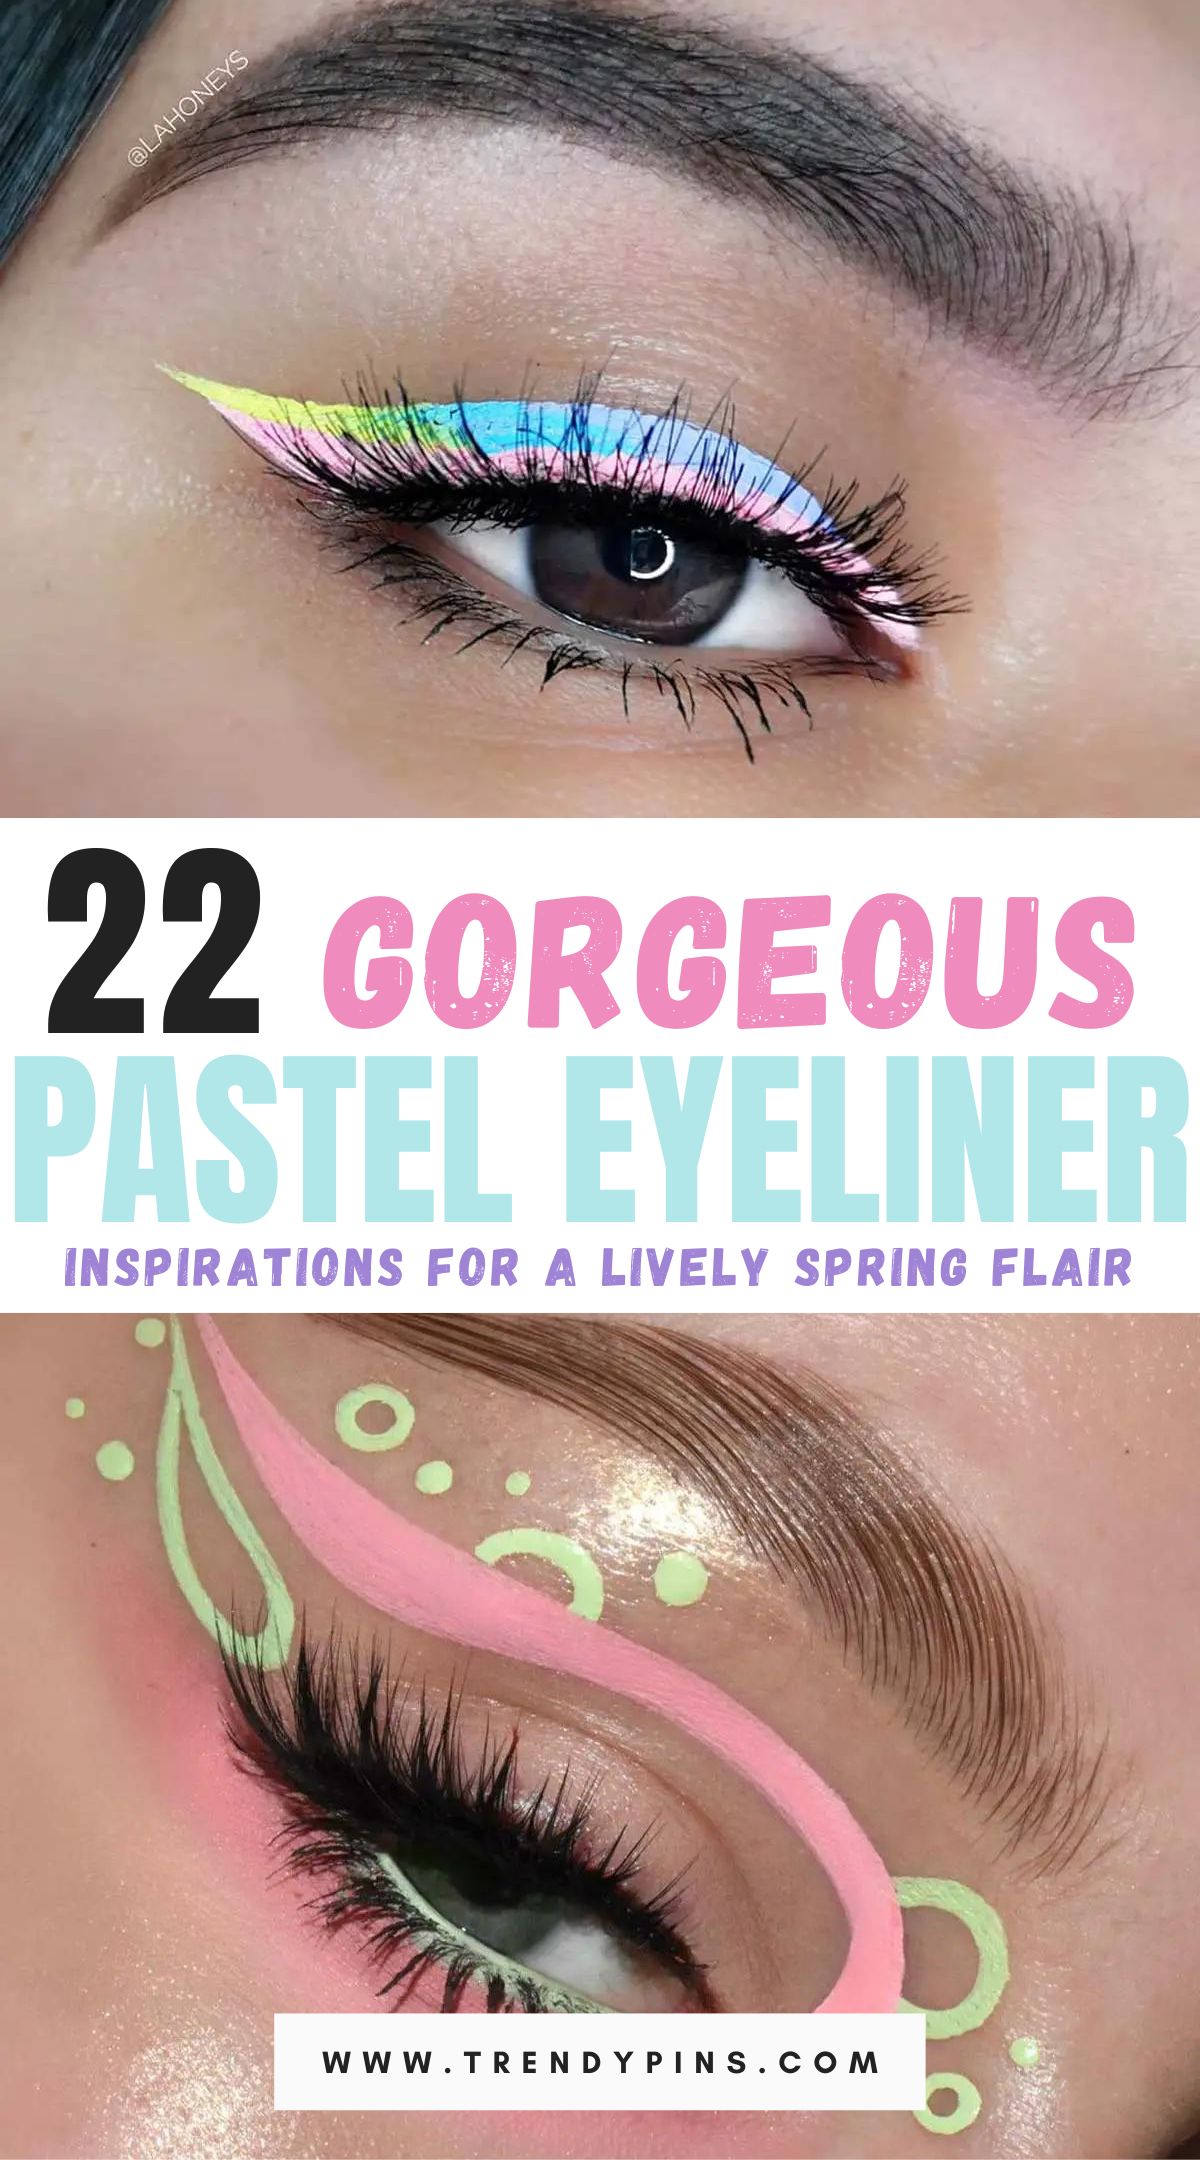 Pastel Eyeliner Styles